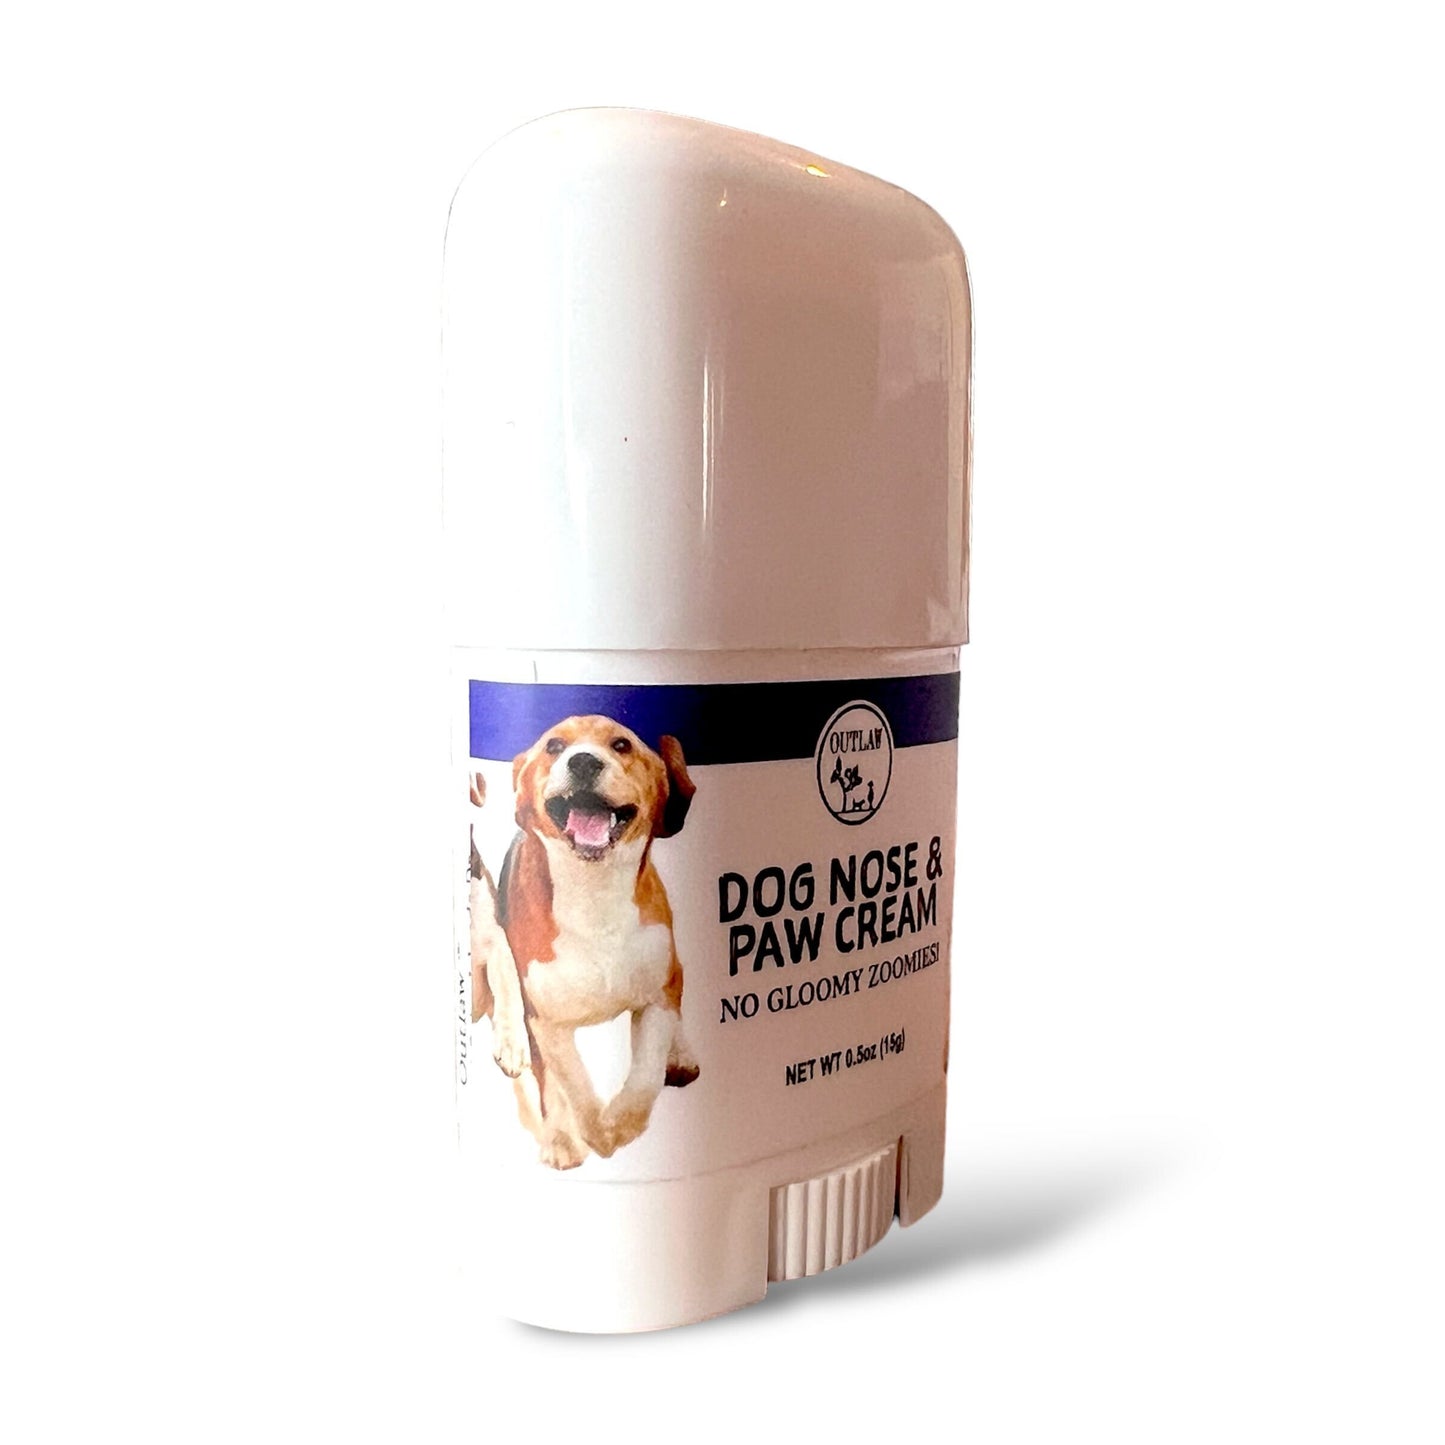 Outlaw Dog Nose & Paw Cream